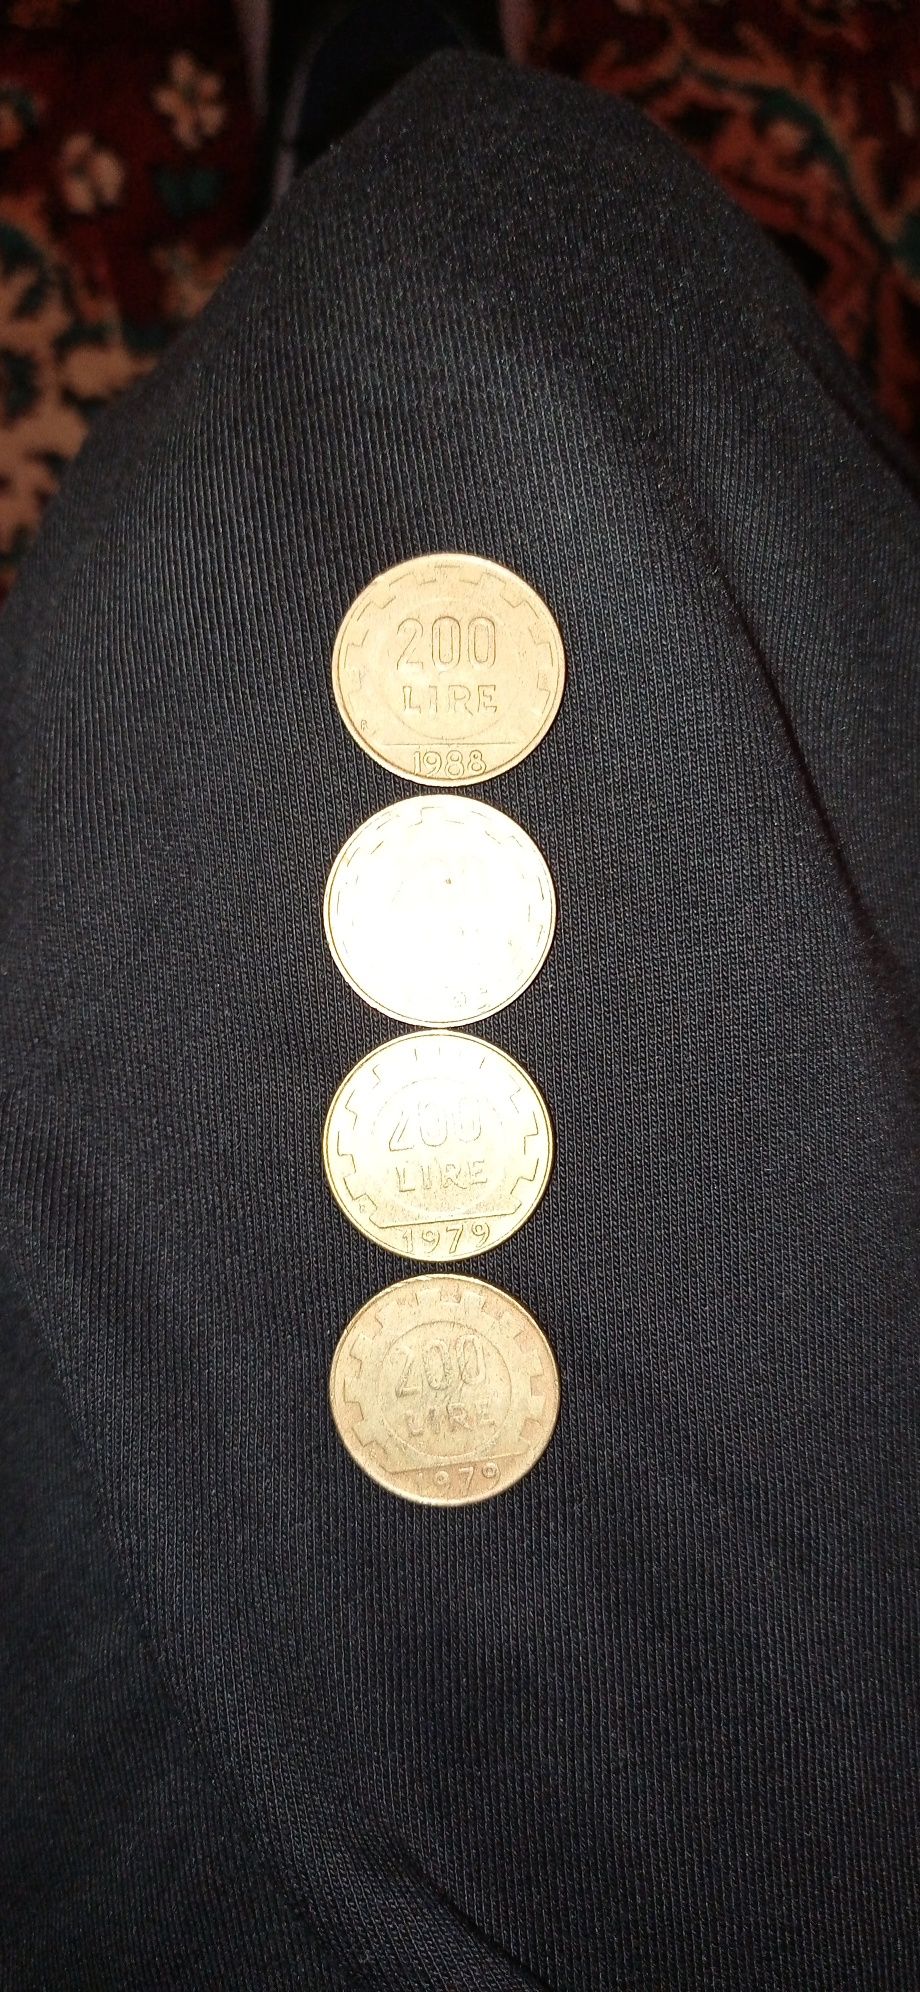 Lot monede italiene foarte rare